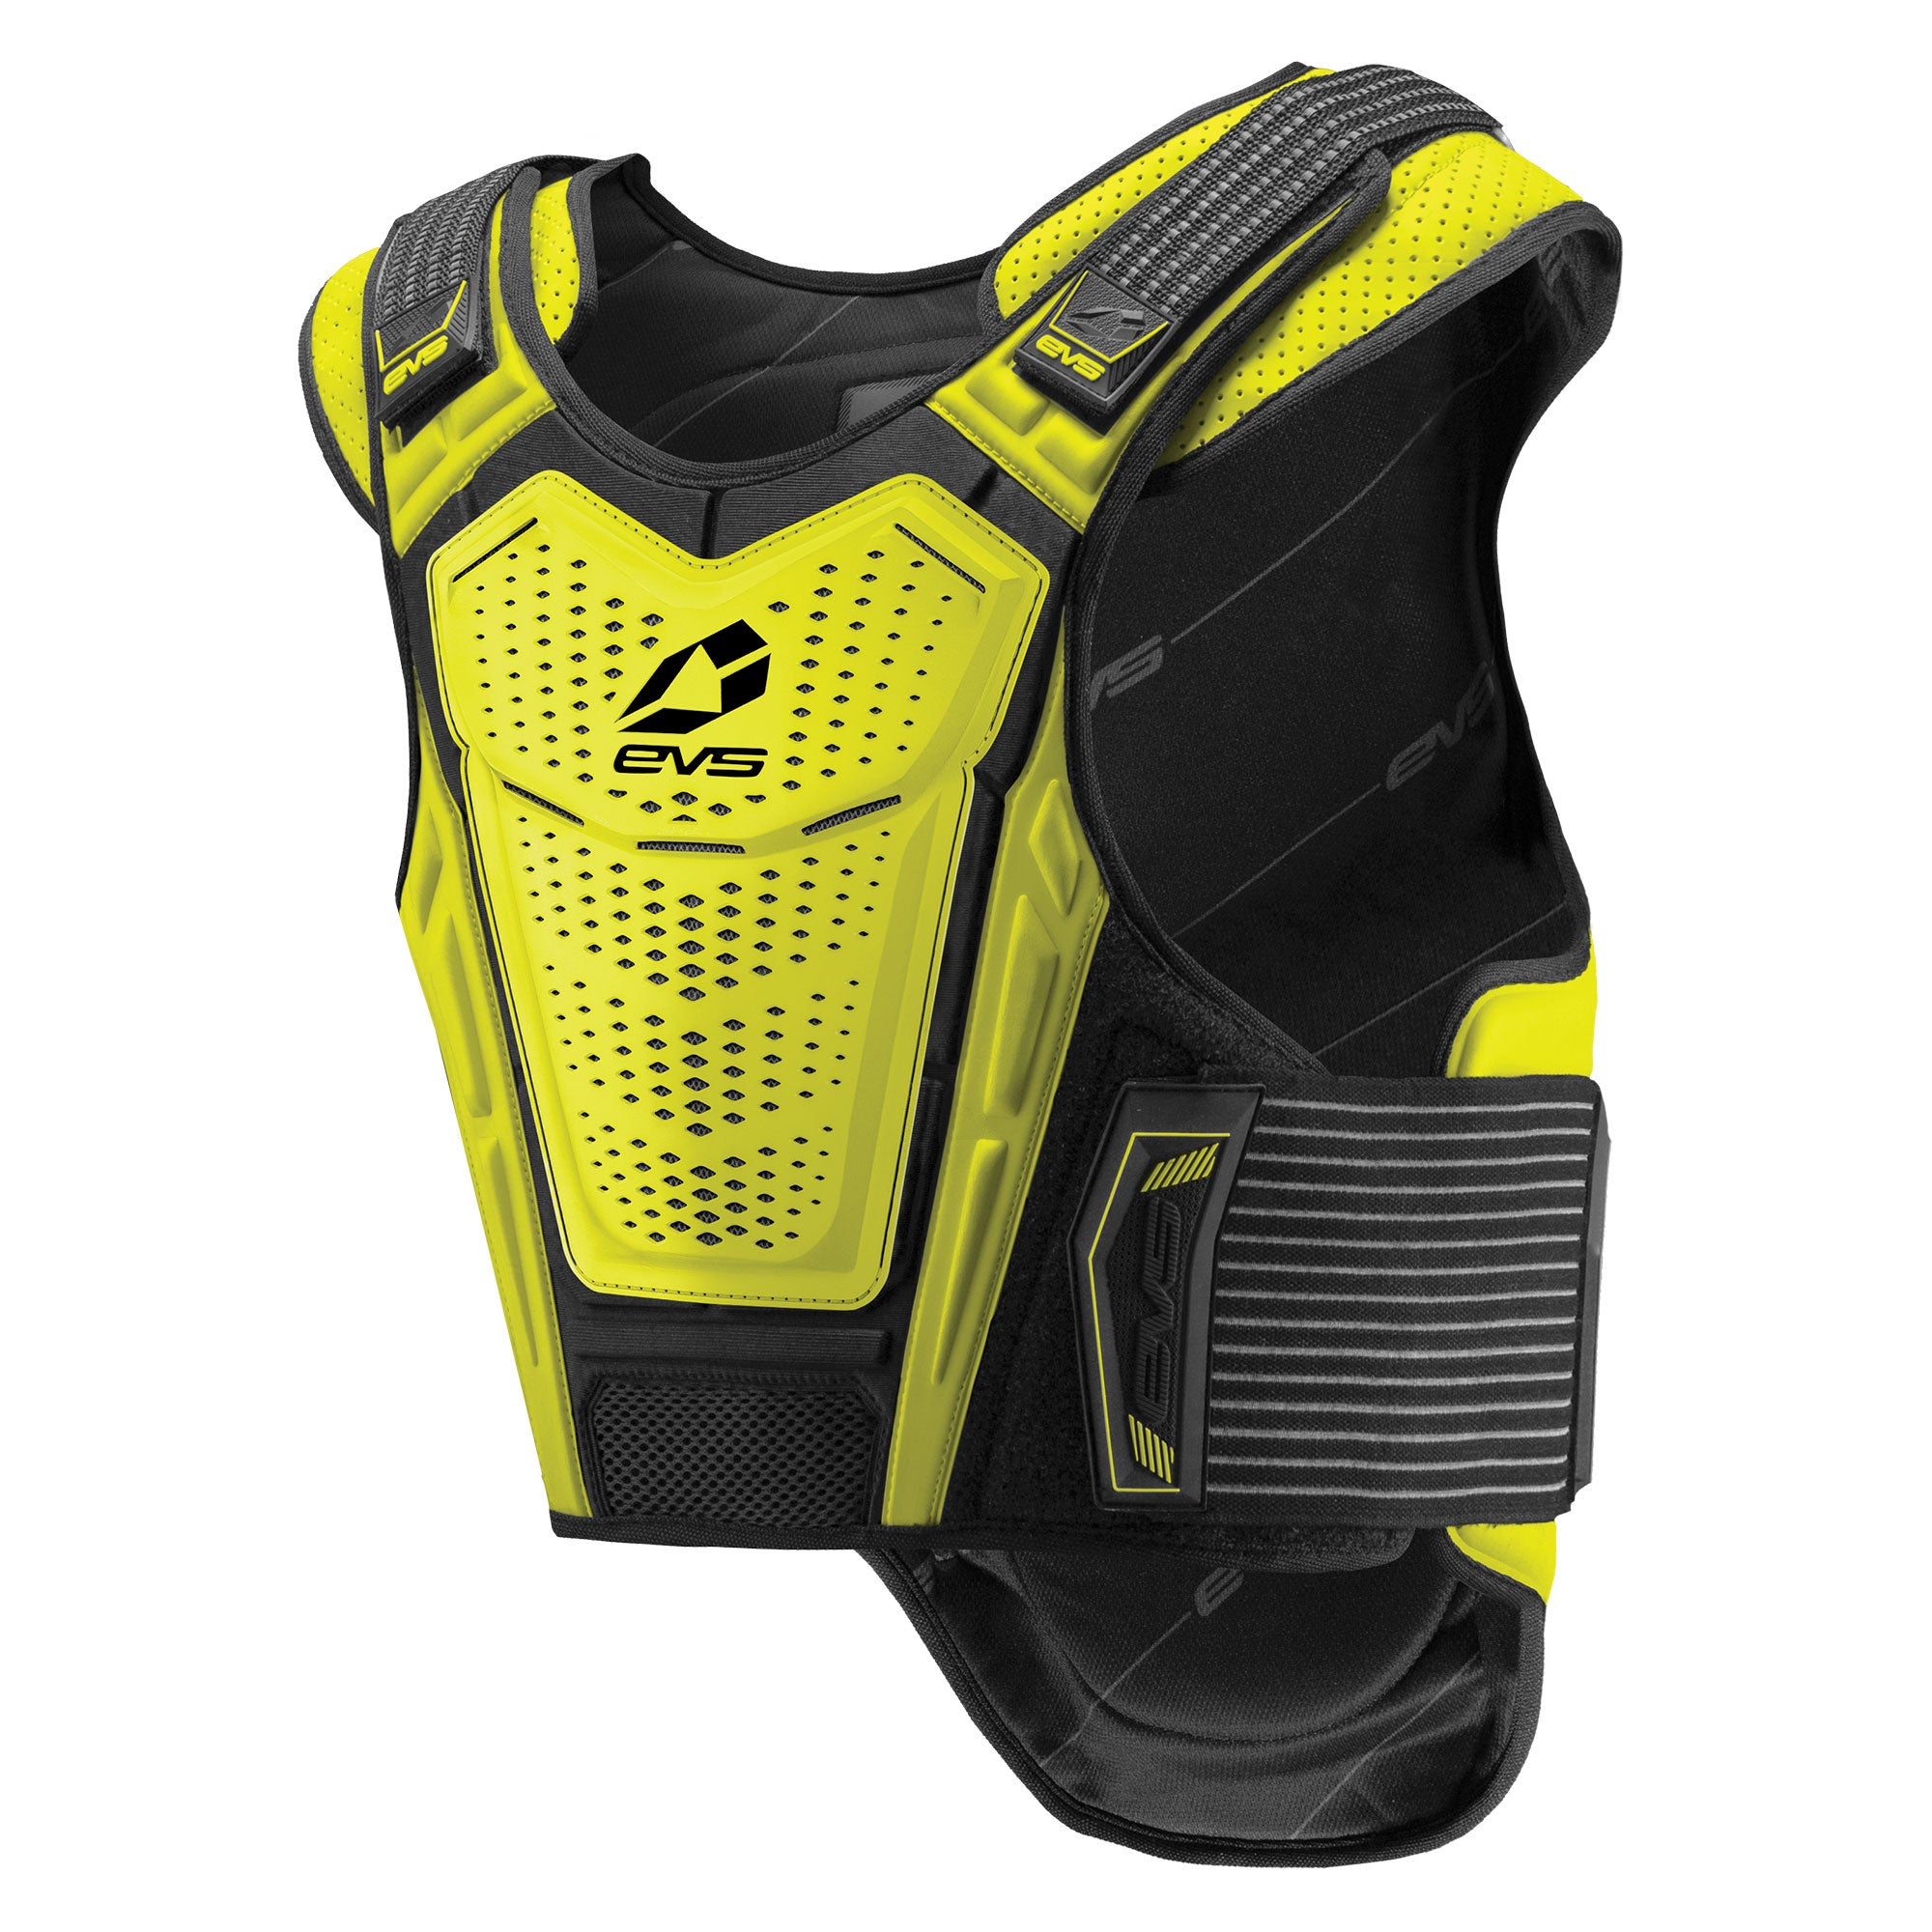 EVS - Street Vest  Sports vest, Body armor, Sports